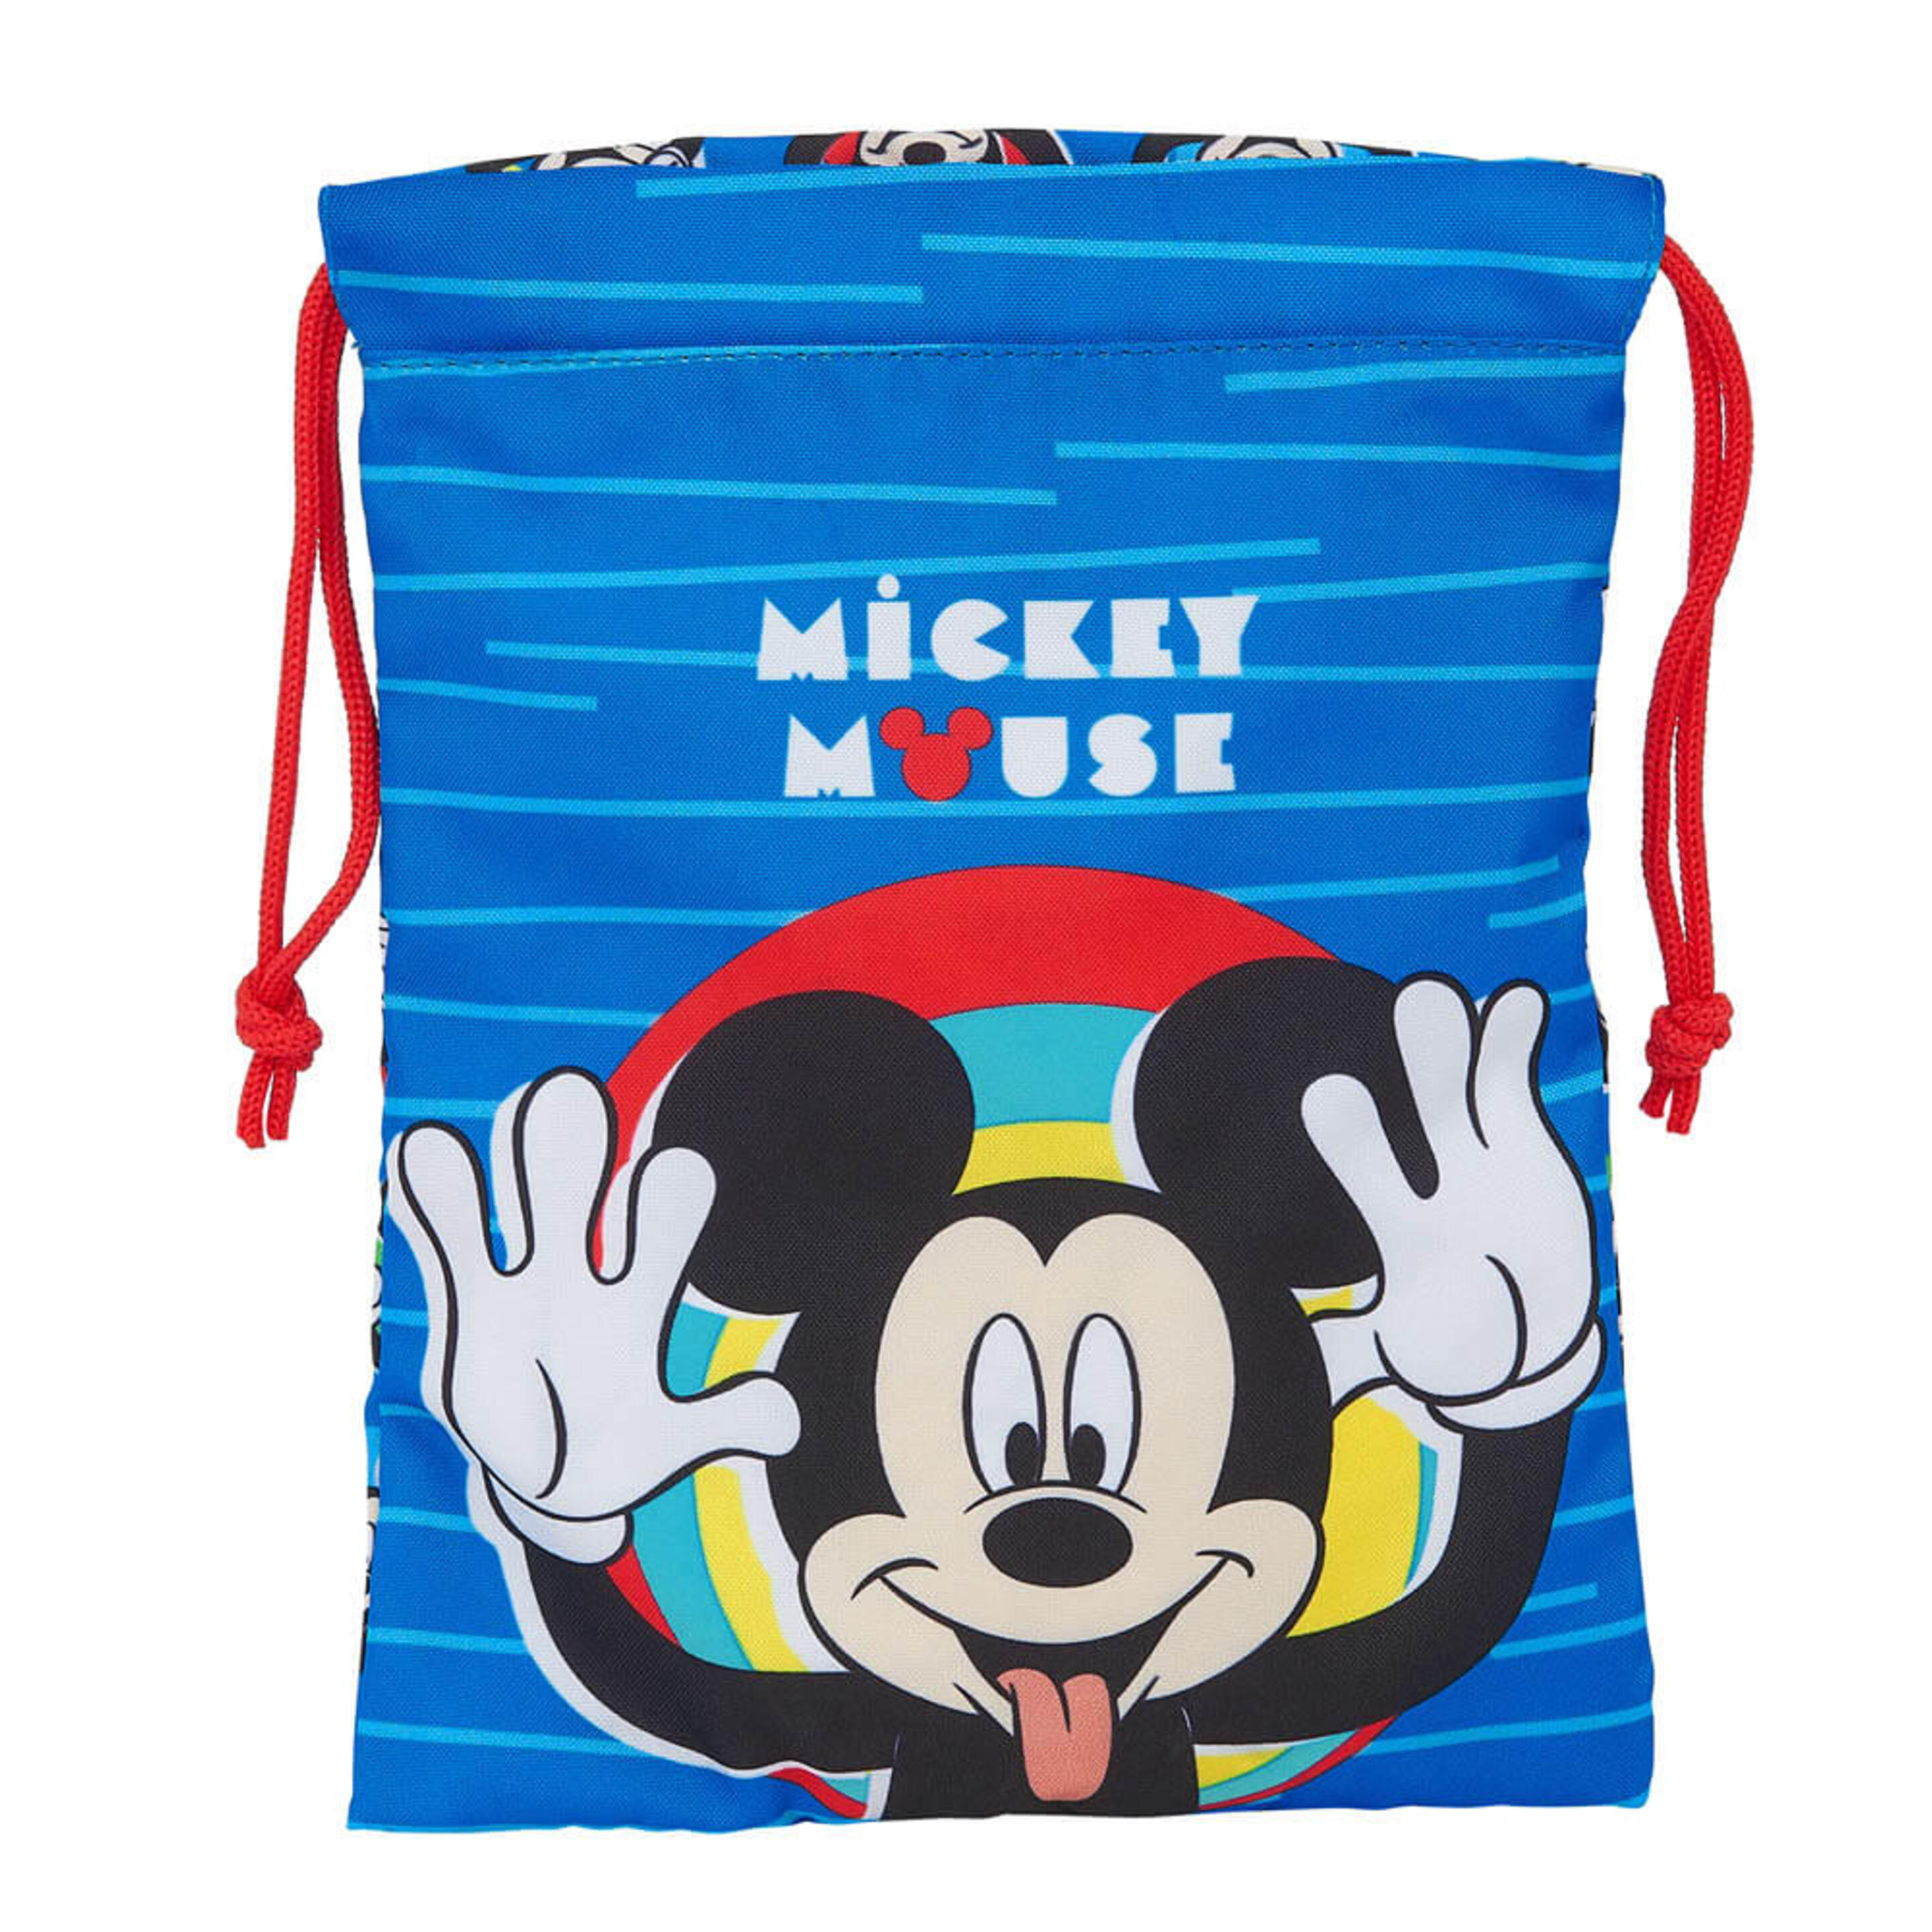 Saquito Portameriendas Mickey Mouse - Multicolor  MKP